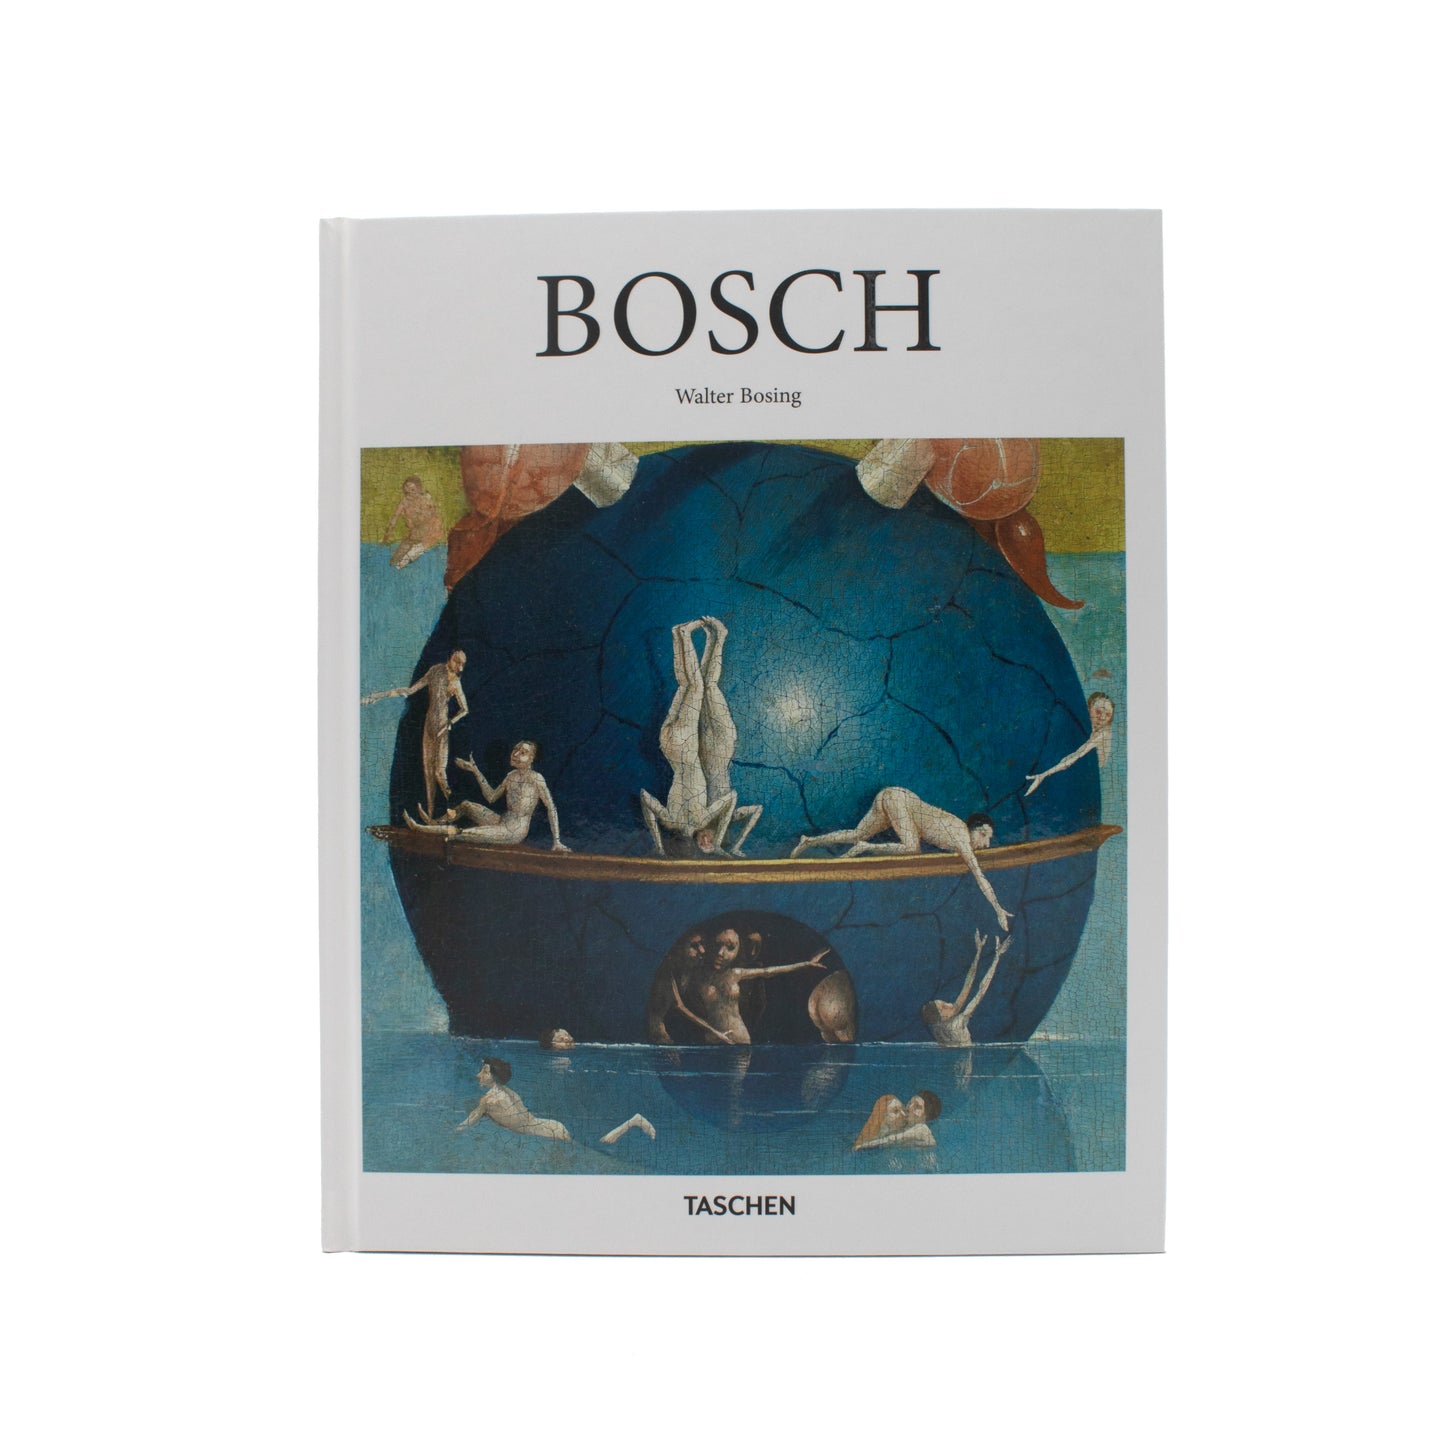 Bosch: Taschen